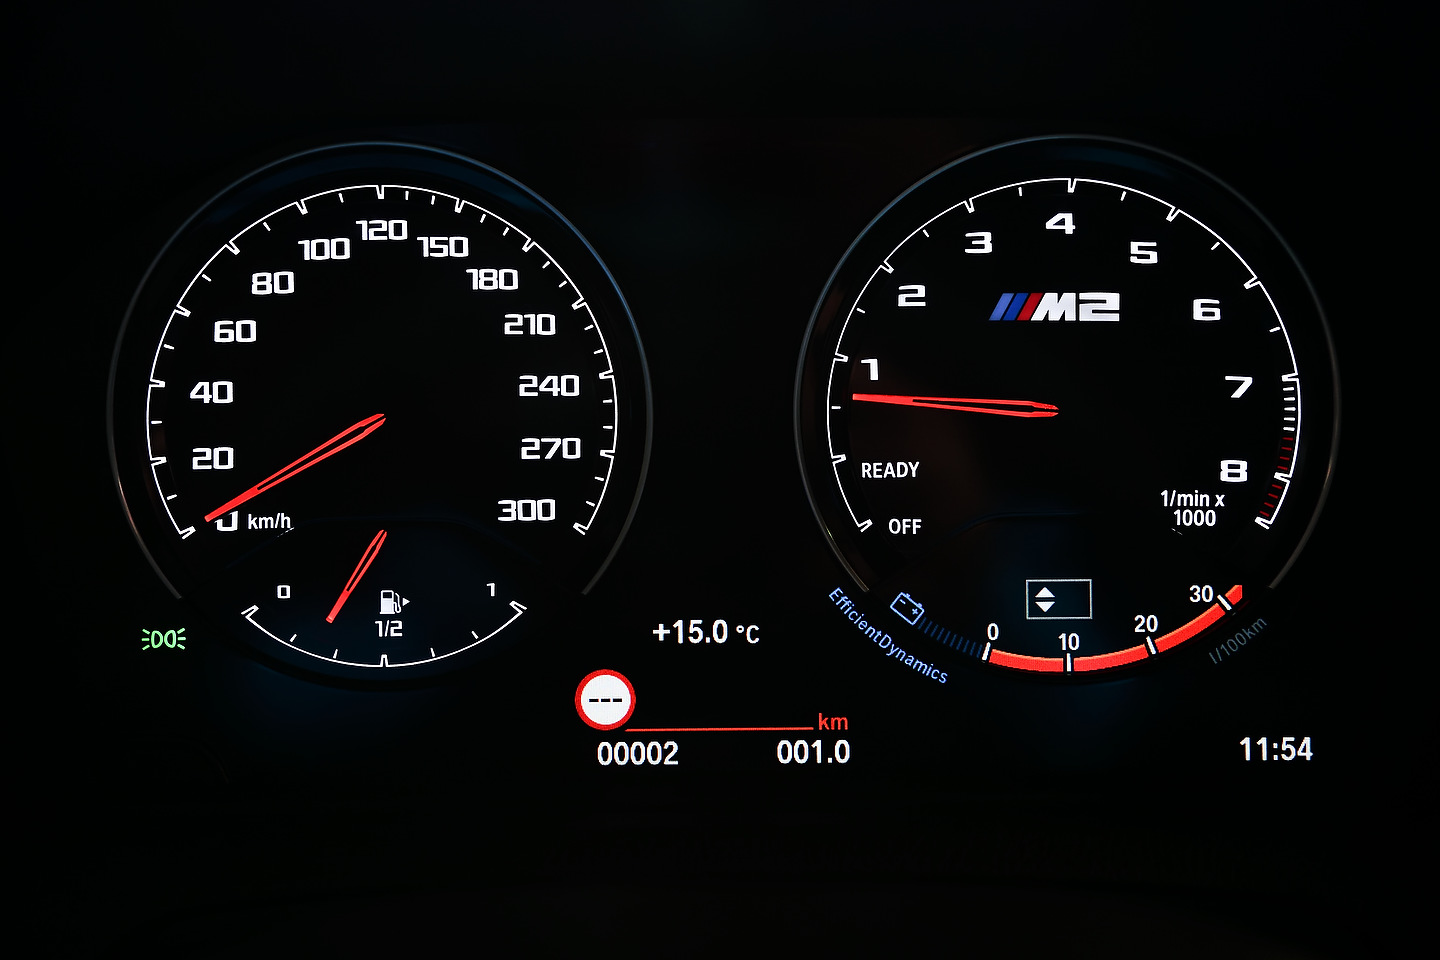 2020 BMW M2 CS Coupe